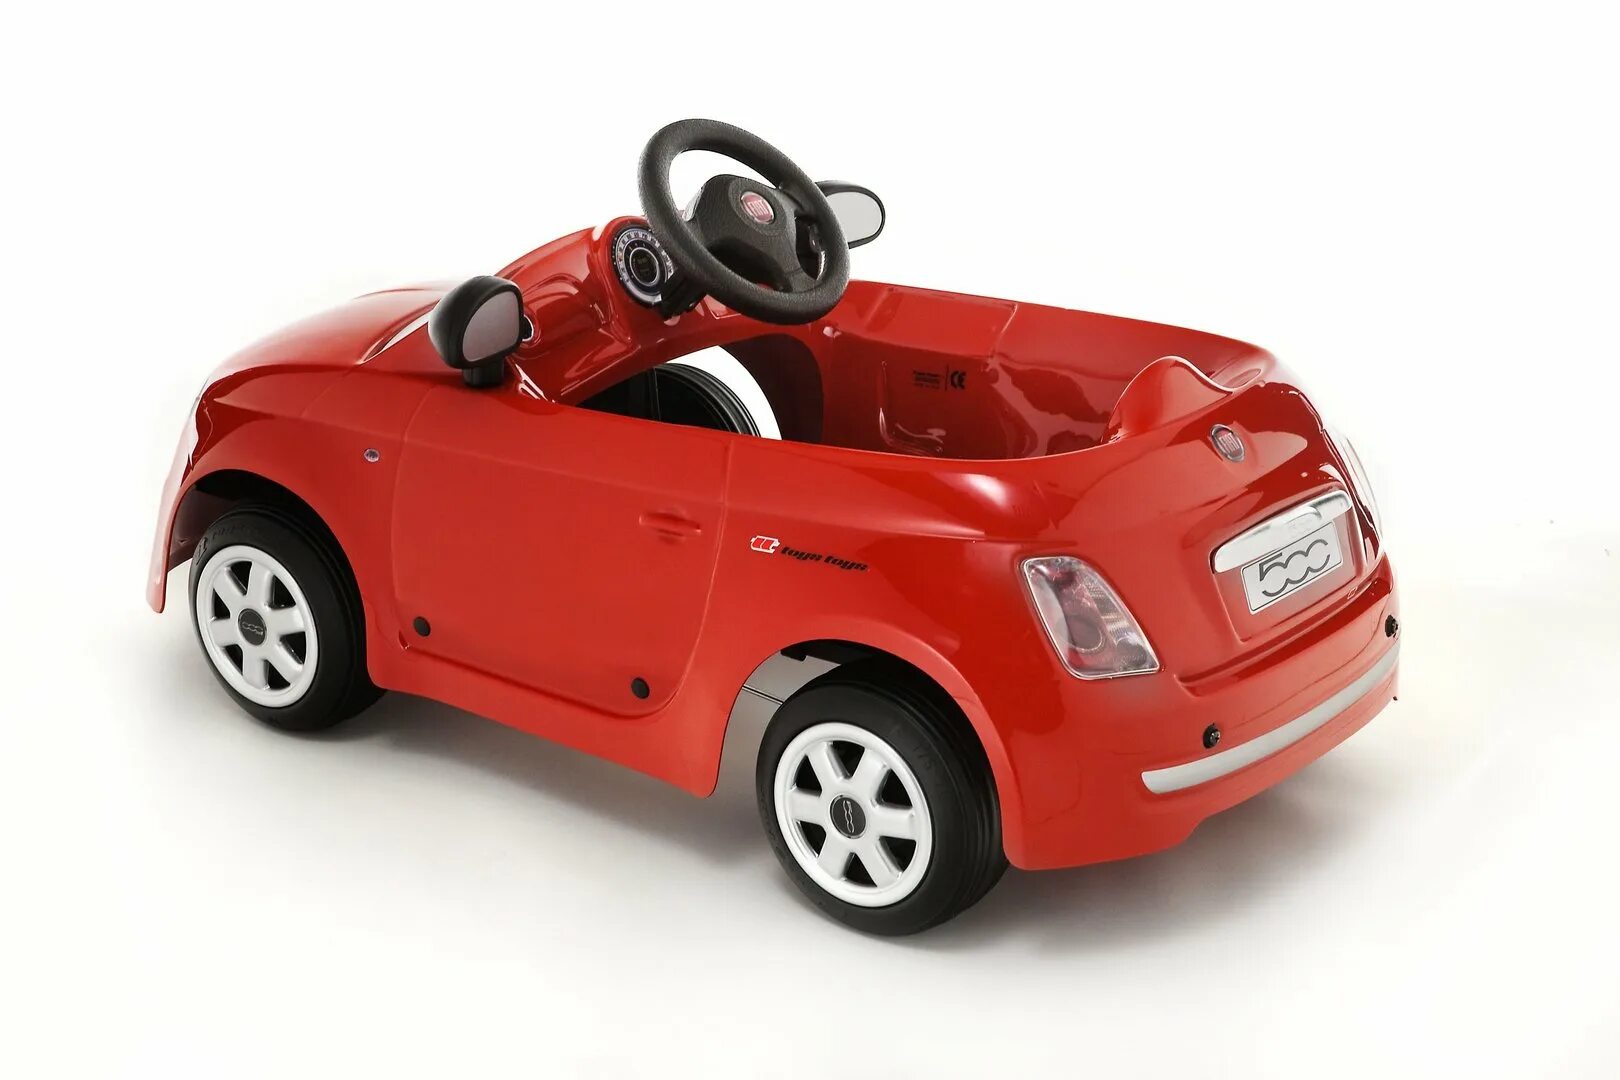 Toys toys машина. Fiat 500 Toy. Детская Электромашина Fiat 500. Машинка педальная Toys Toys. Педальная машина Альфа Ромео.